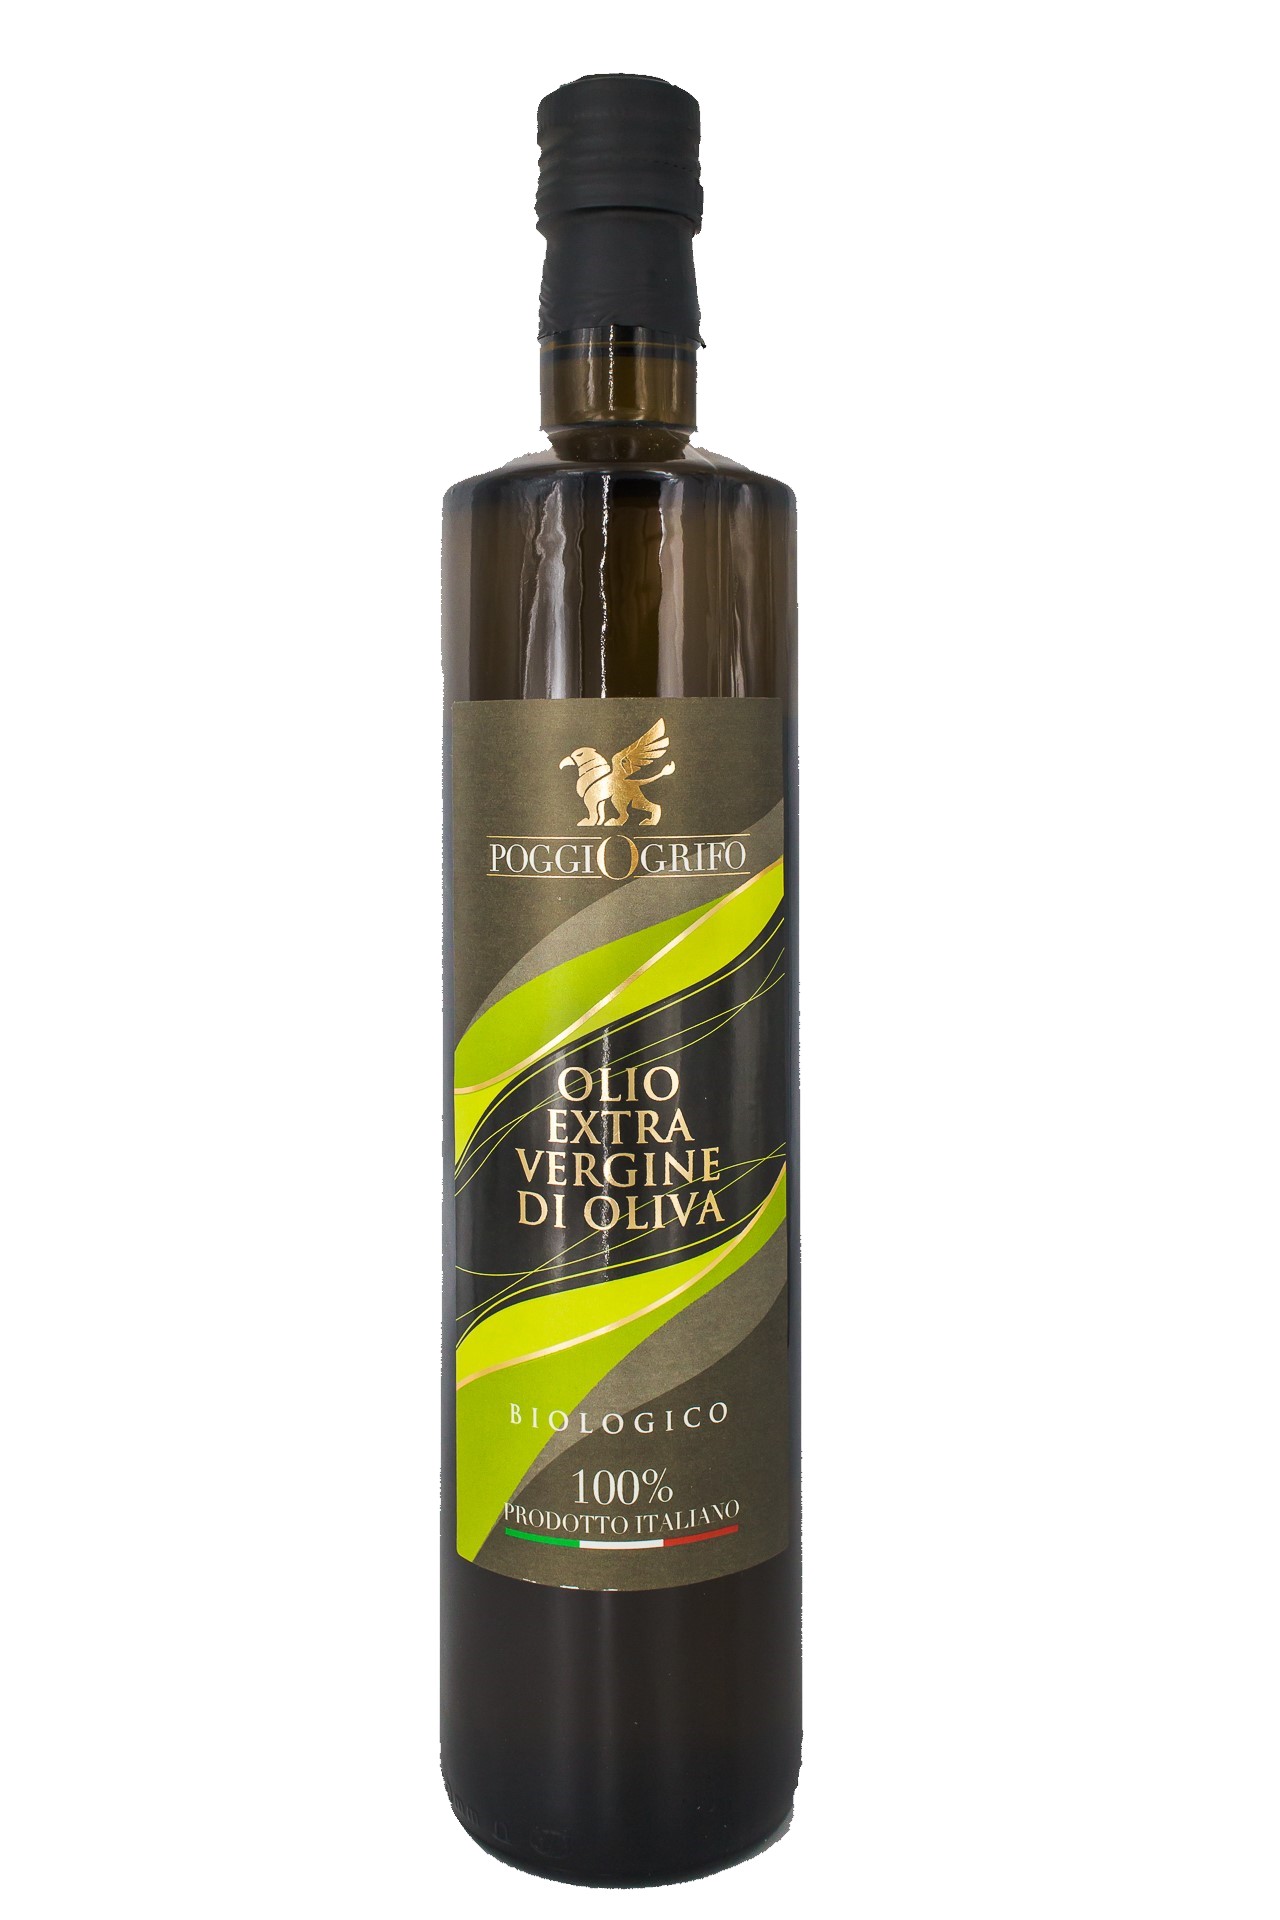 Olio extra vergine di oliva 100% ITALIANO "BIOLOGICO" 0,75 litri x 6 bottiglie